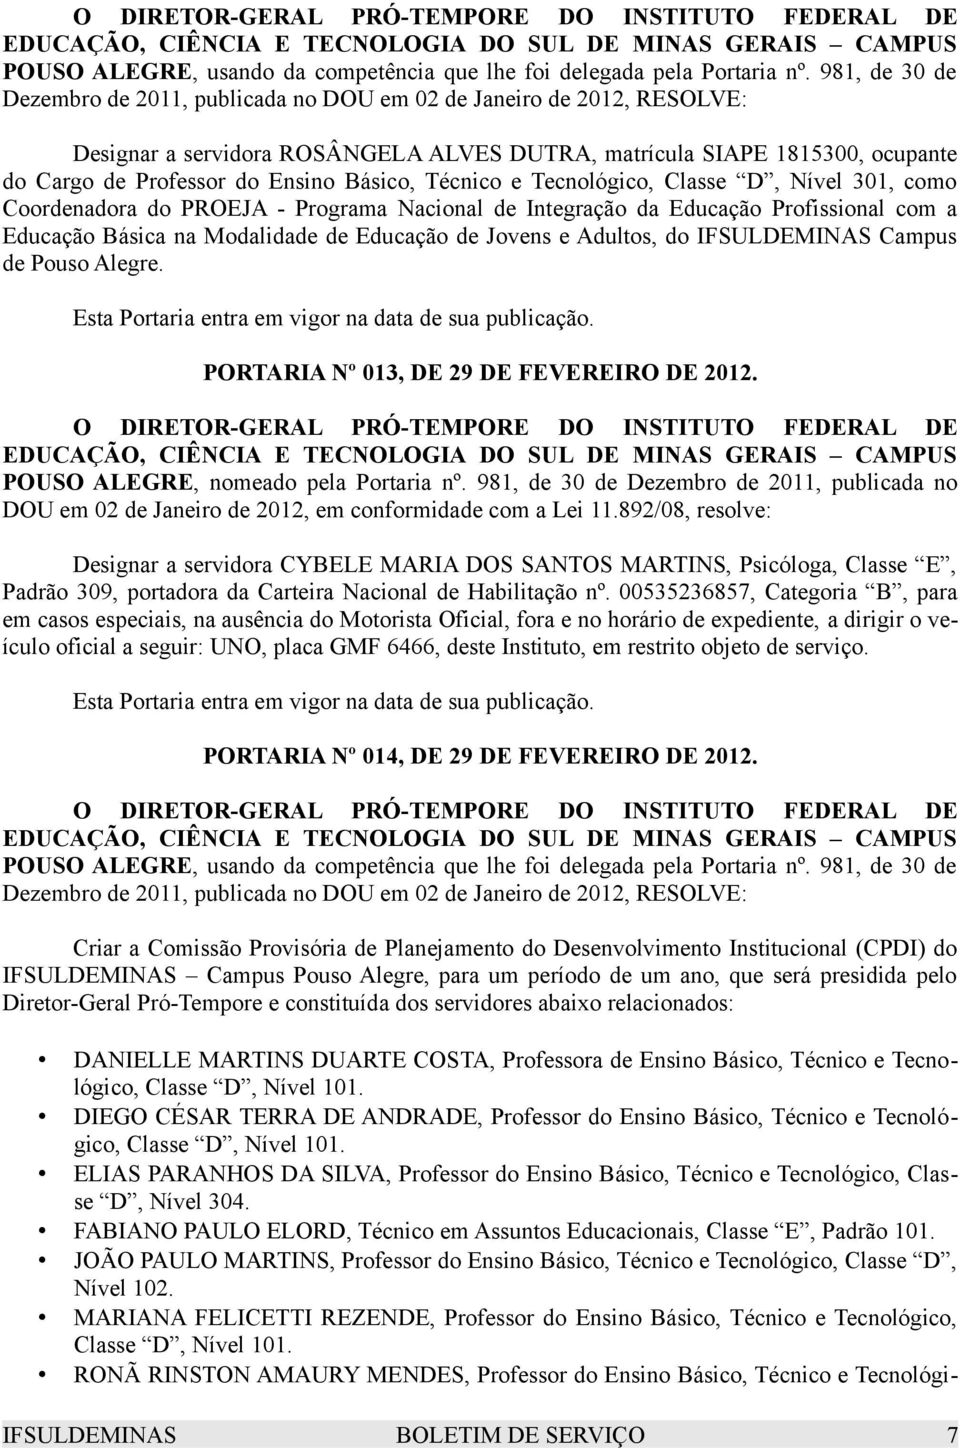 PORTARIA Nº 013, DE 29 DE FEVEREIRO DE 2012. POUSO ALEGRE, nomeado pela Portaria nº. 981, de 30 de Dezembro de 2011, publicada no DOU em 02 de Janeiro de 2012, em conformidade com a Lei 11.